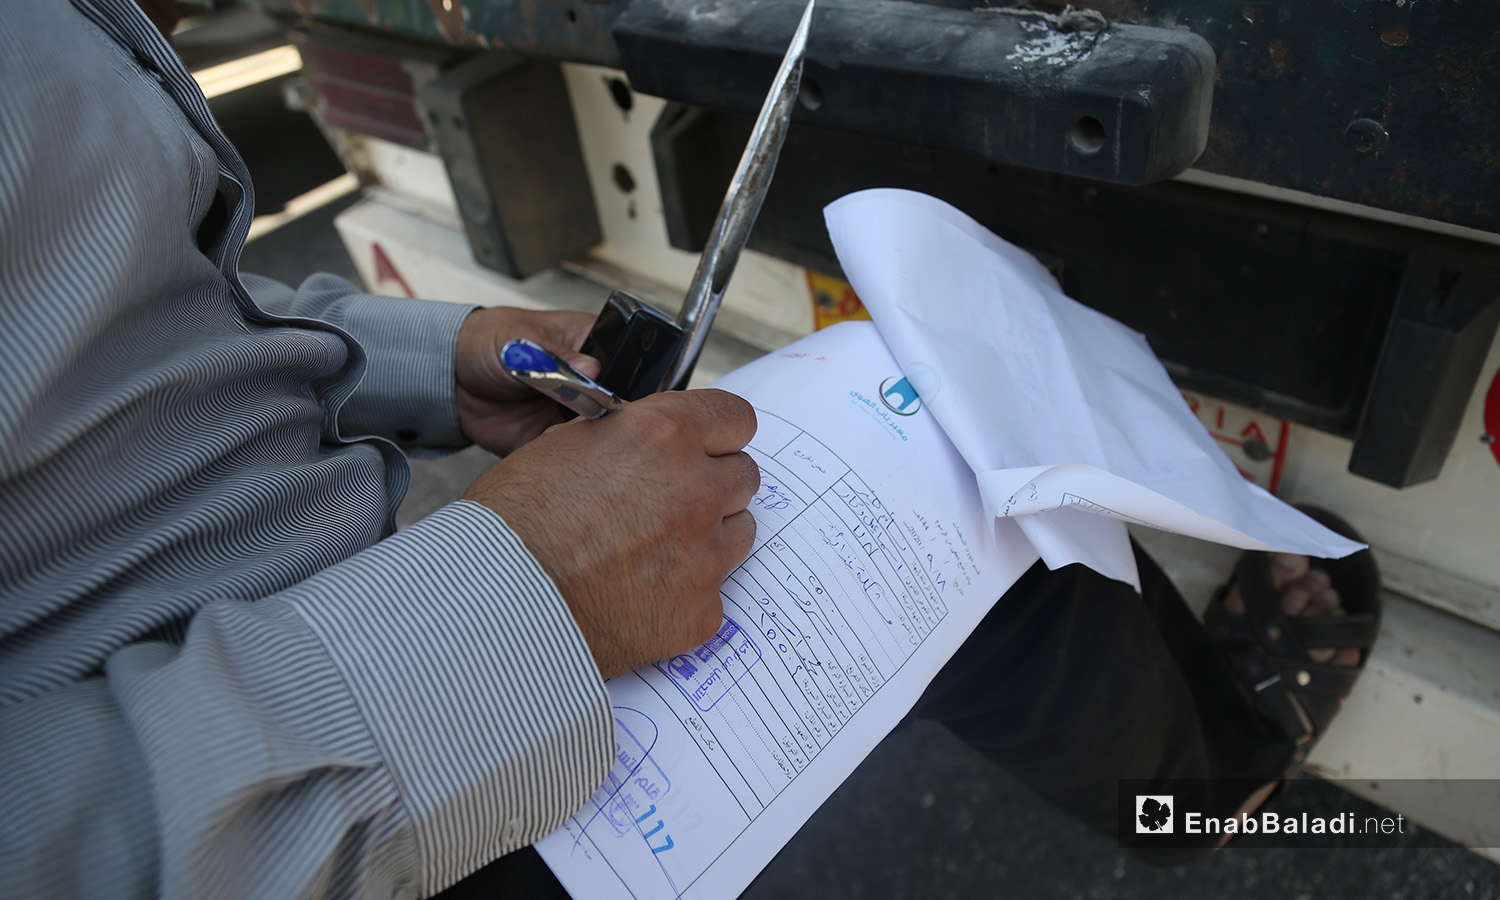 يفحص موظفو معبر "باب الهوى" الحدودي المساعدات الداخلة عبر تركيا قبل السماح بدخولها إلى إدلب - 18 أيلول 2020 (عنب بلدي/ يوسف غريبي)